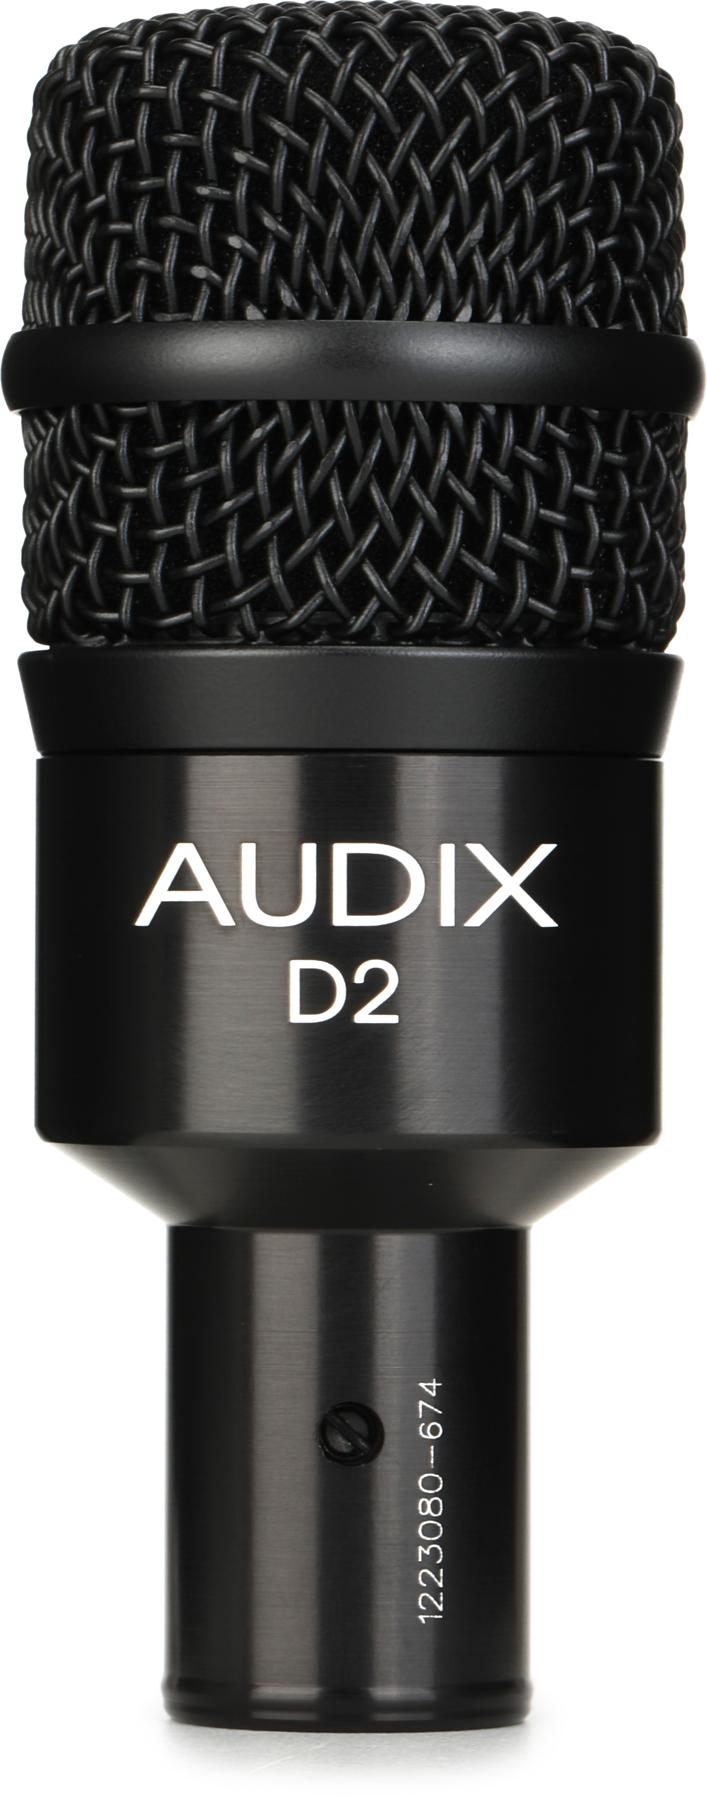 1. Audix D2 Hypercardioid Dynamic Microphone